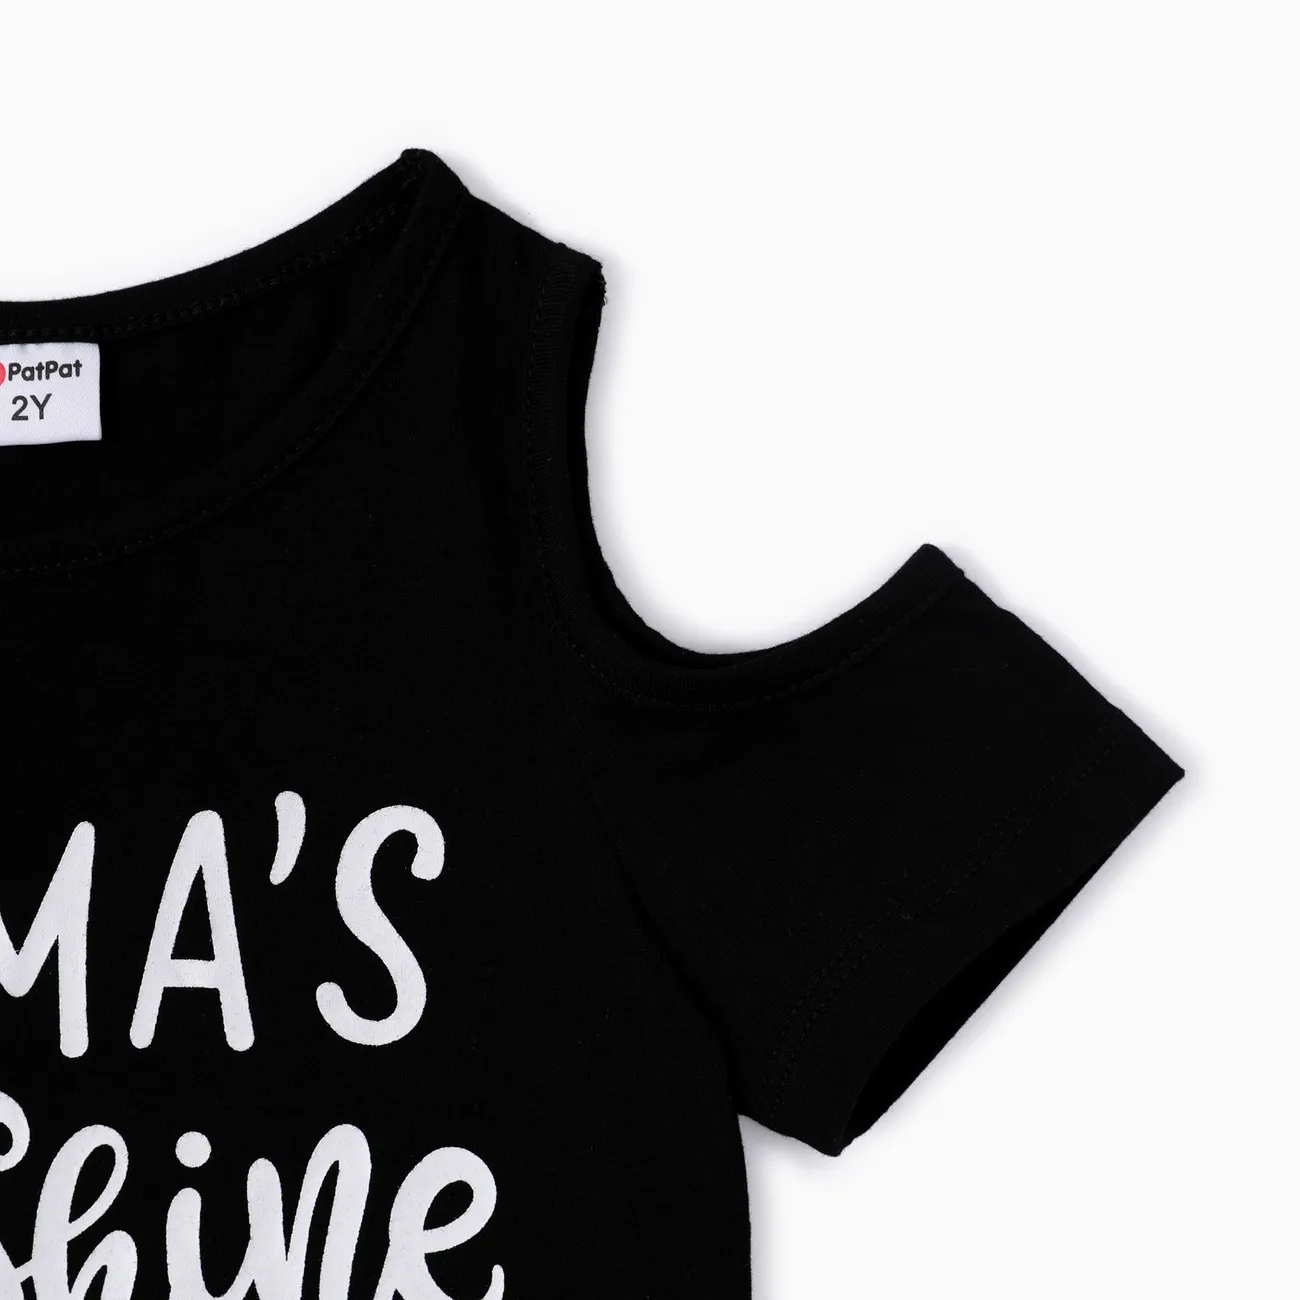 Kleinkind-/Kindermädchen 2-teiliges T-Shirt mit Buchstabendruck und ölbeständige Shorts dunkelgrün big image 1